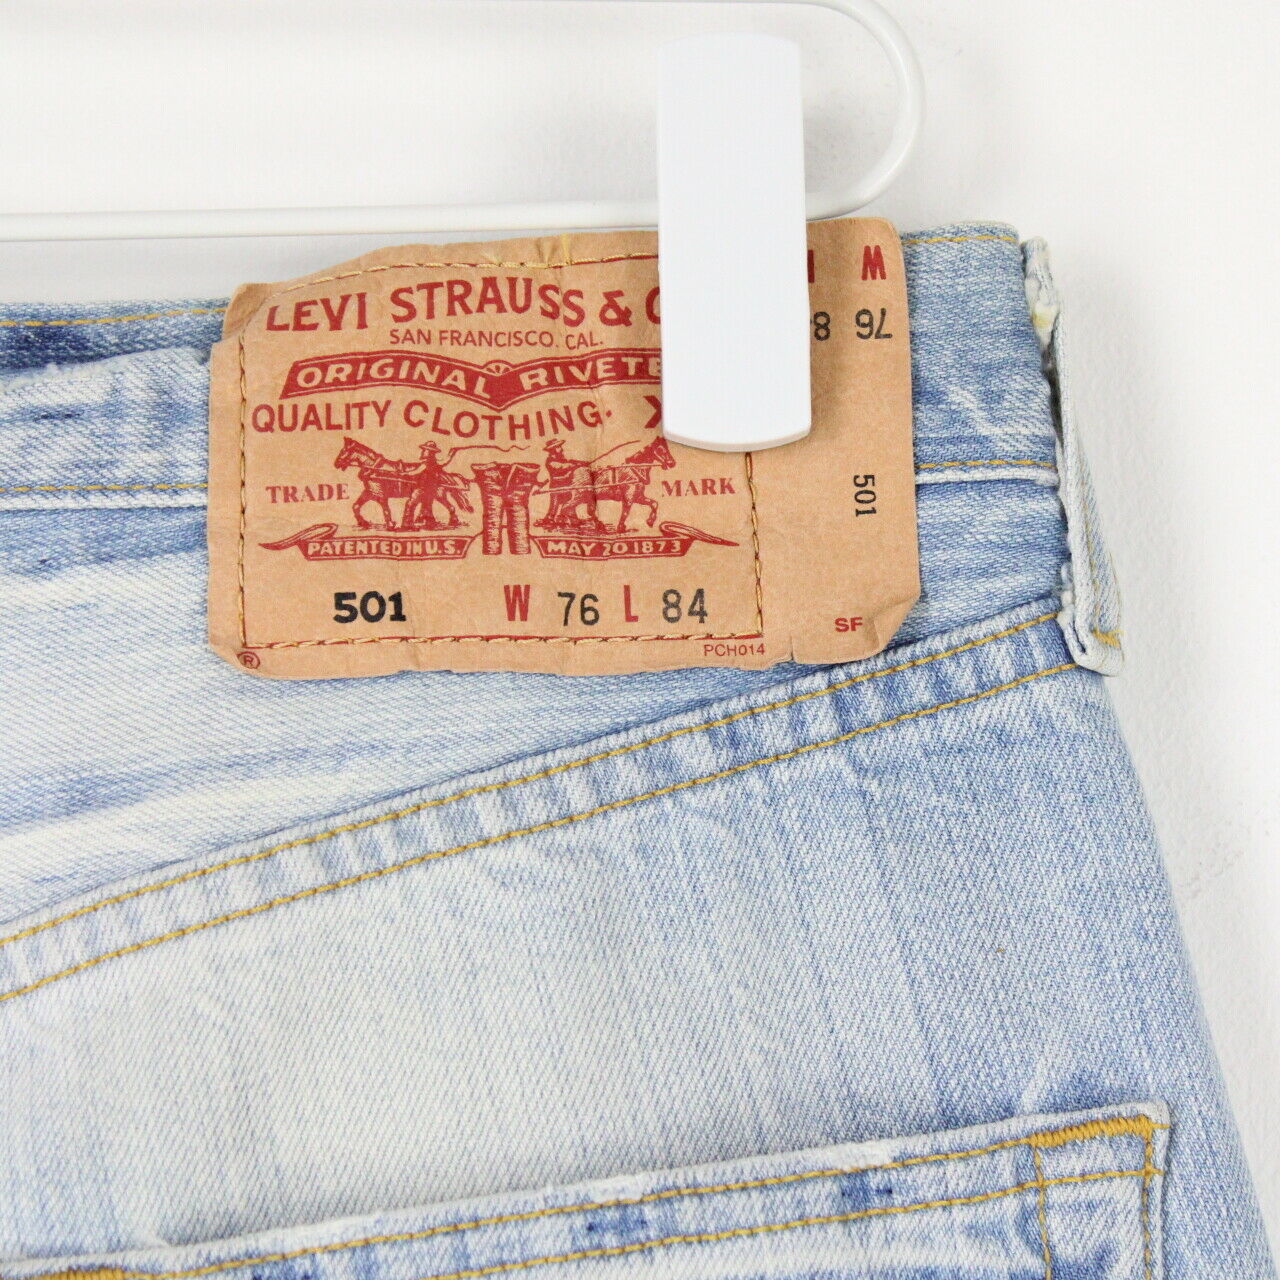 Mens Vintage LEVIS 501 Jeans Light Blue | W30 L30